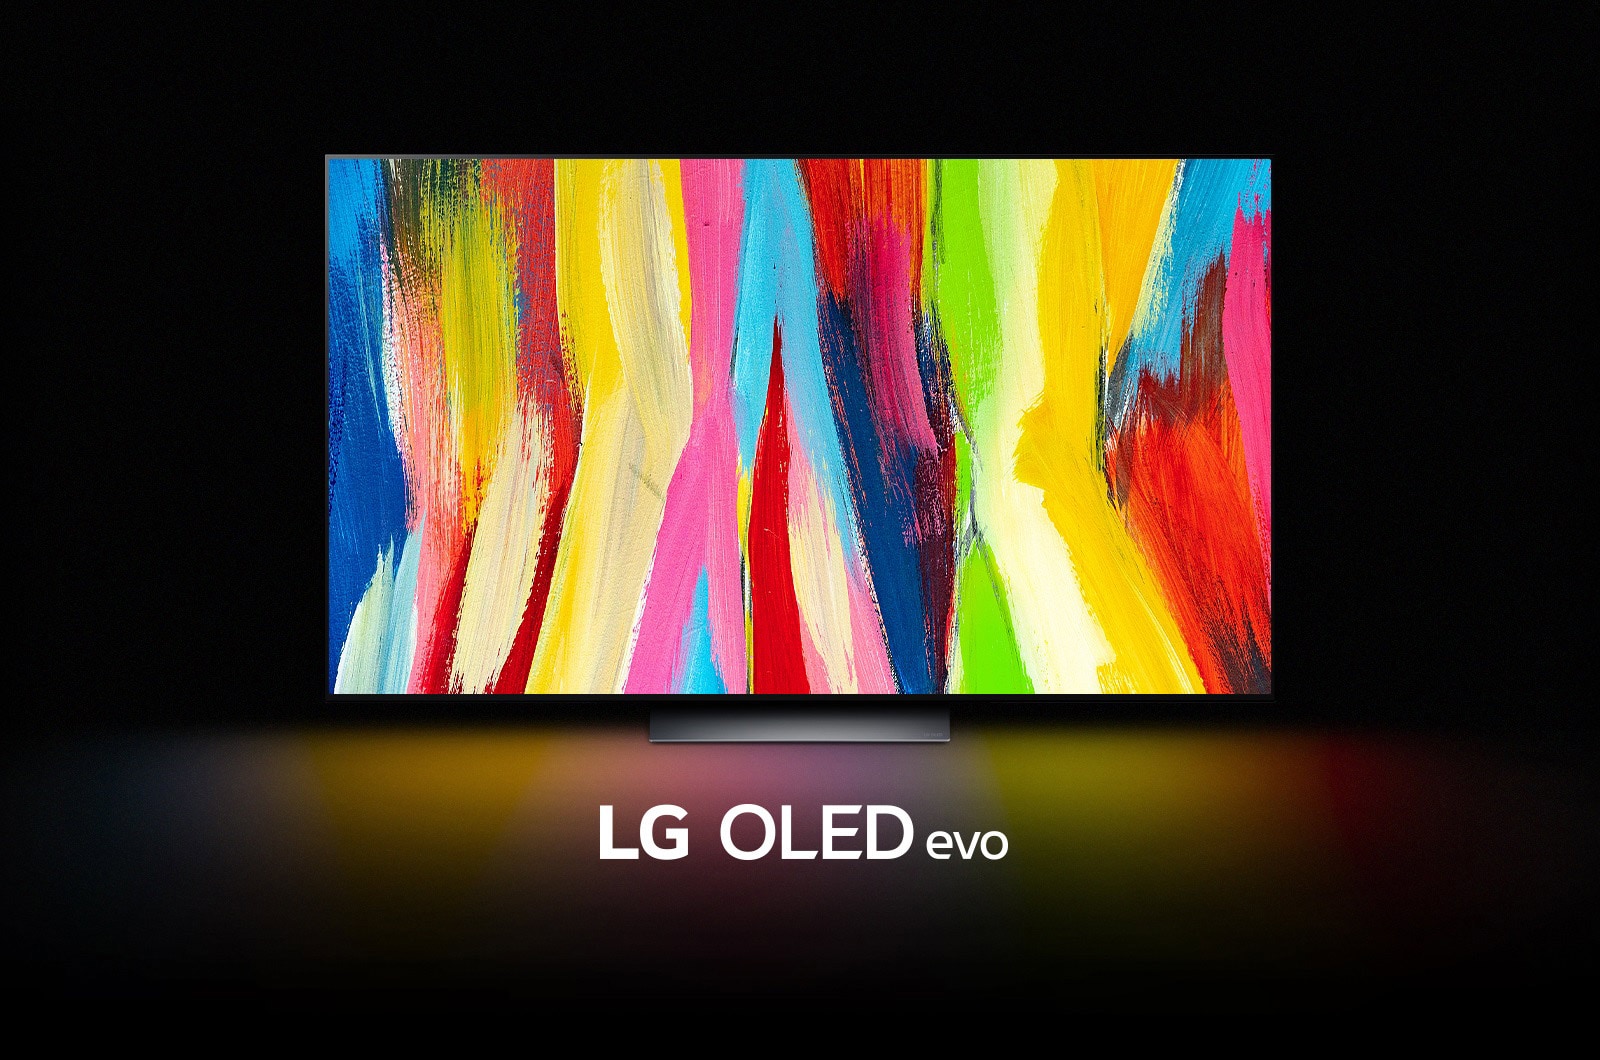 Imagen abstracta de flores de colores que se muestra en un TV LG OLED.